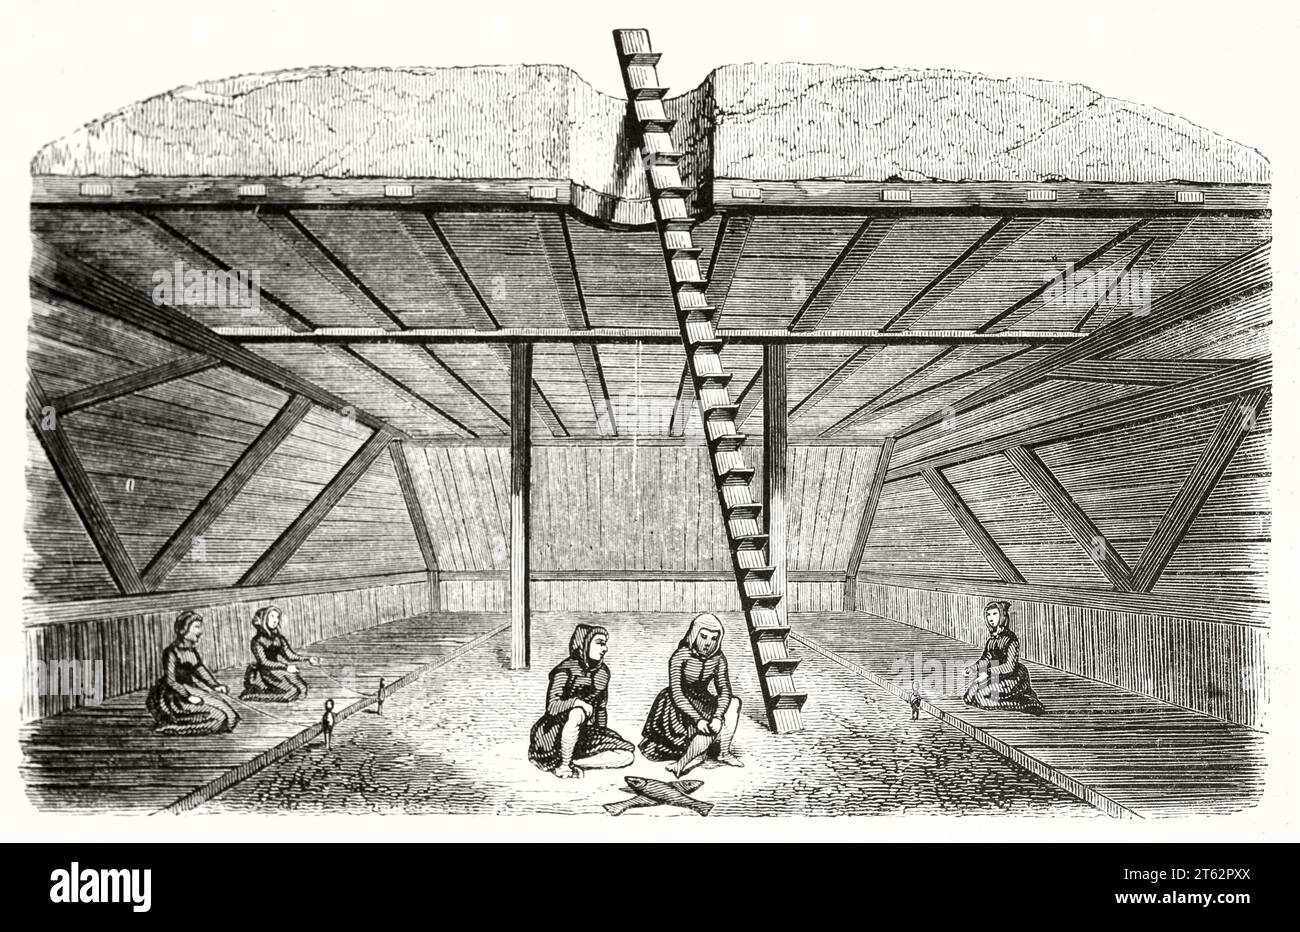 Vieille illustration de résidence d'hiver au Kamchatka. Par auteur non identifié, publ. Sur magasin pittoresque, Paris, 1849 Banque D'Images